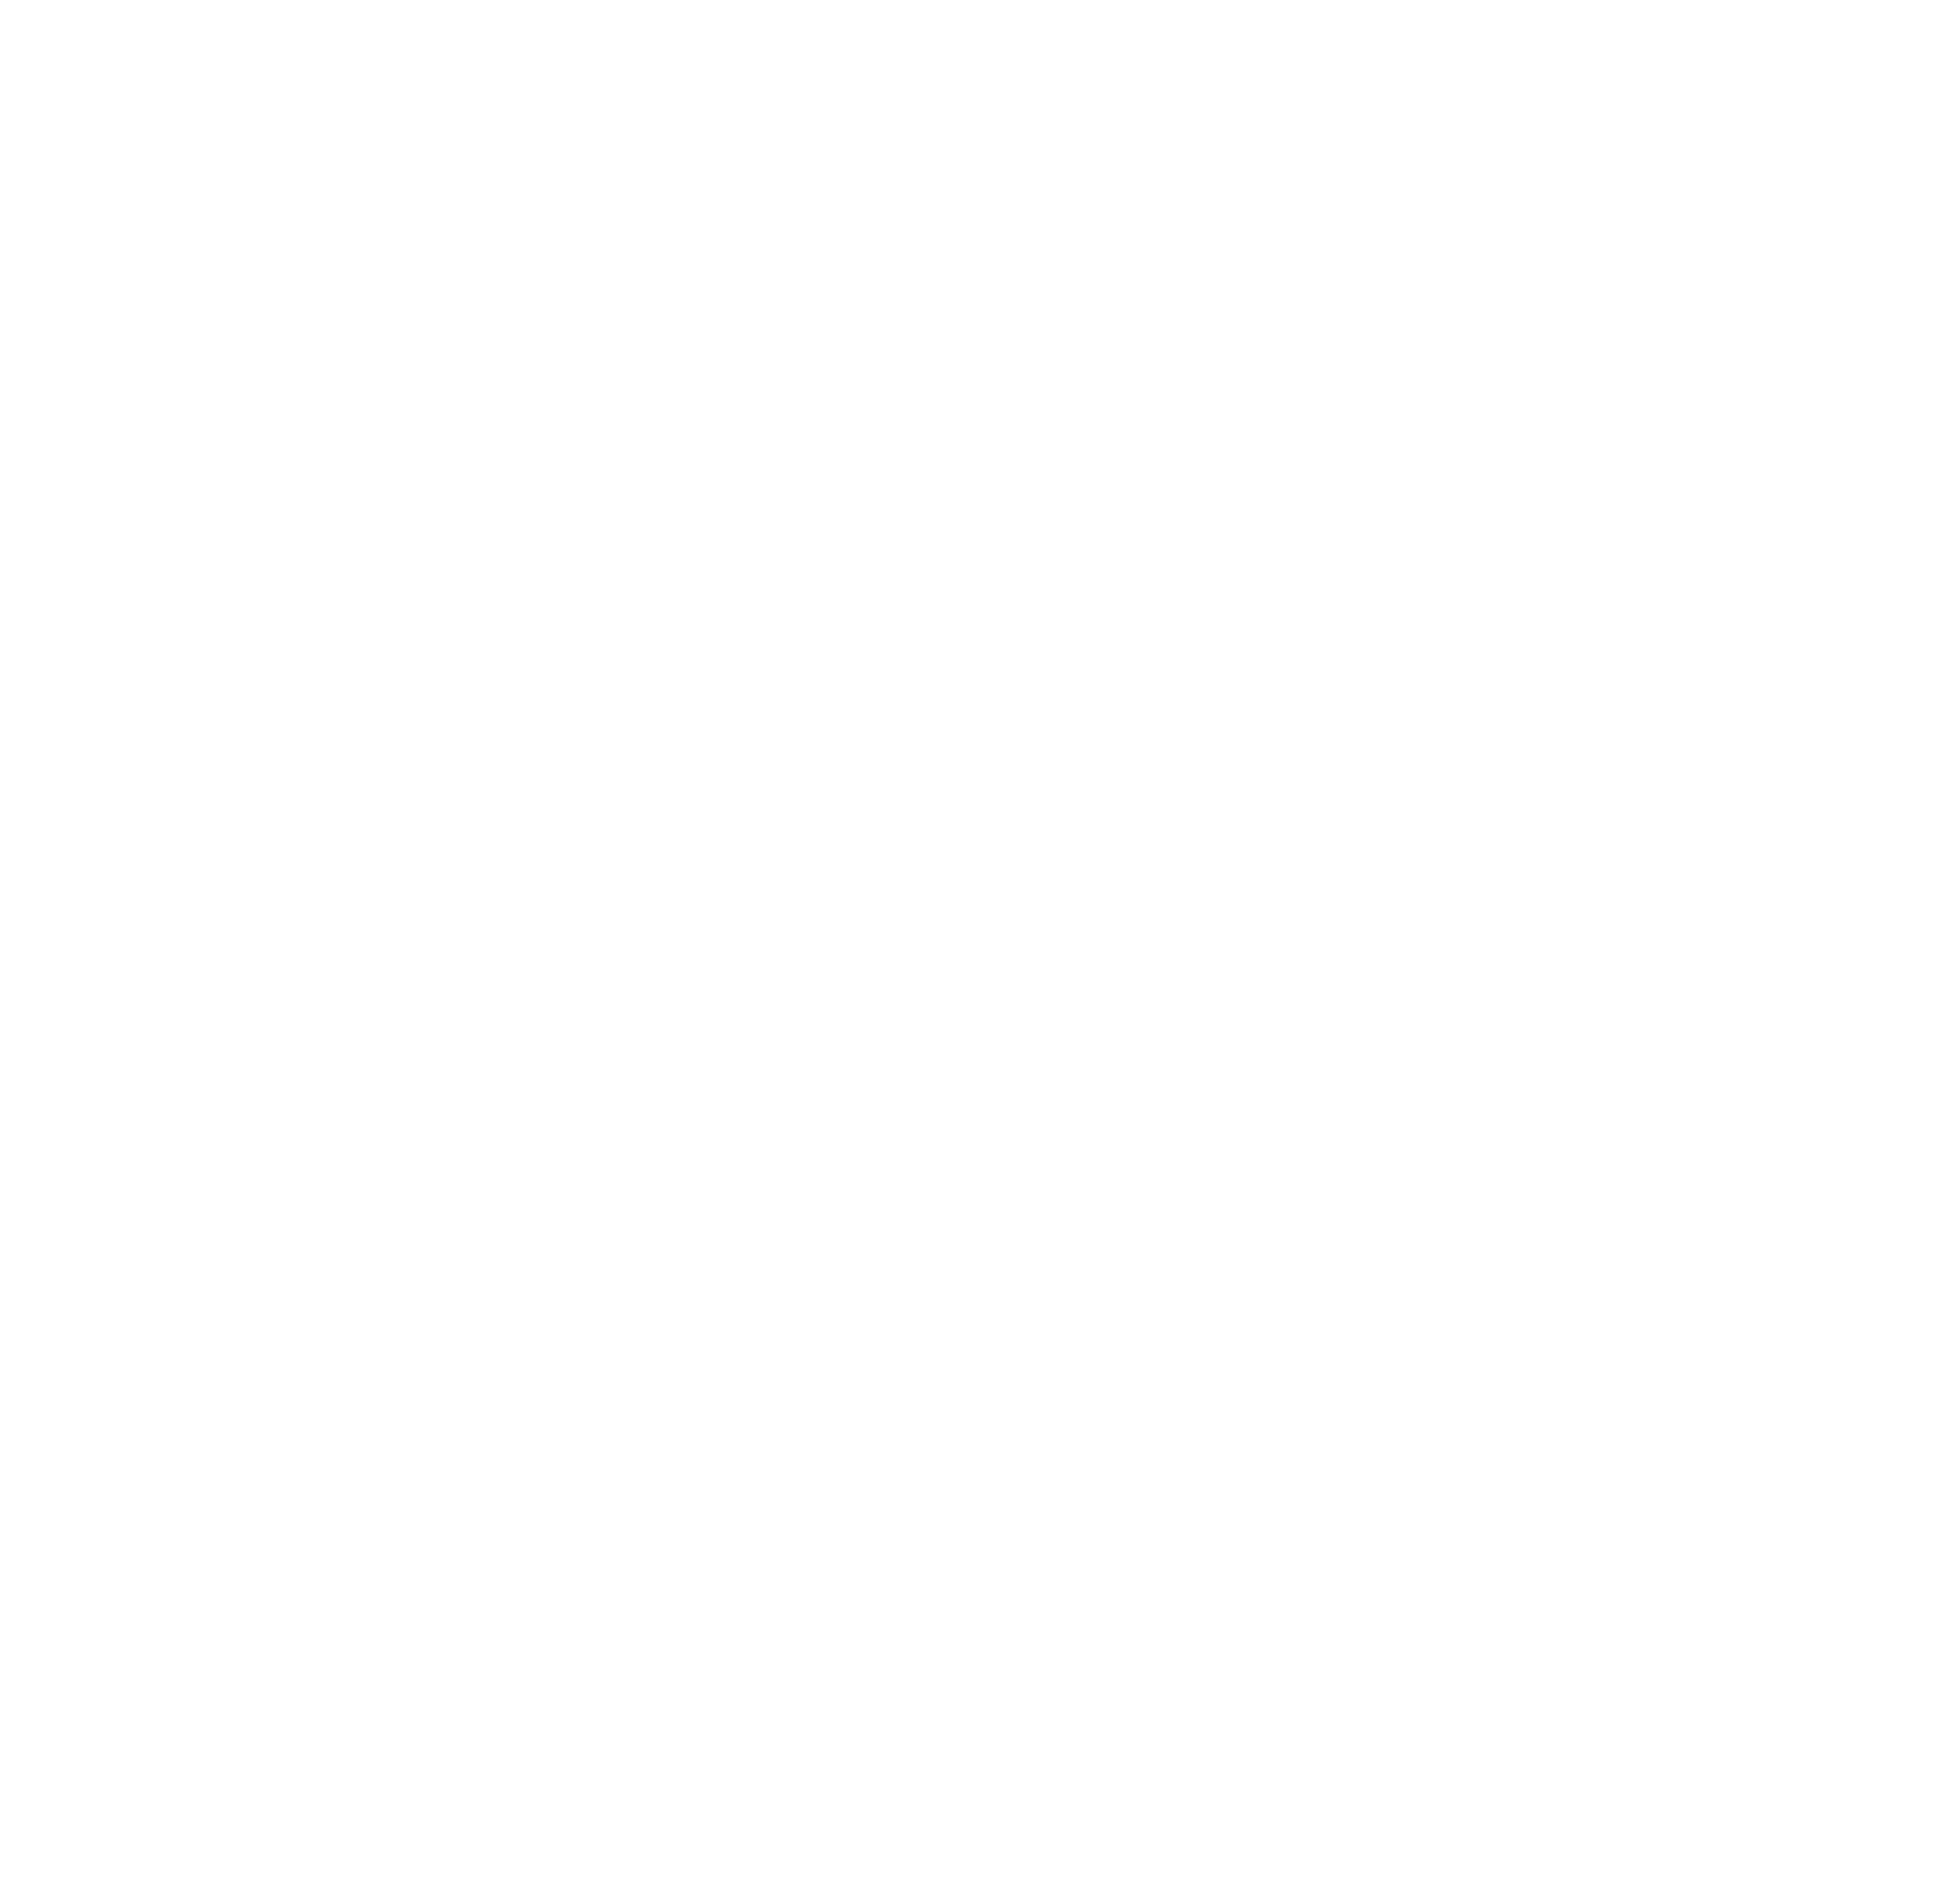 CGM Solicitors